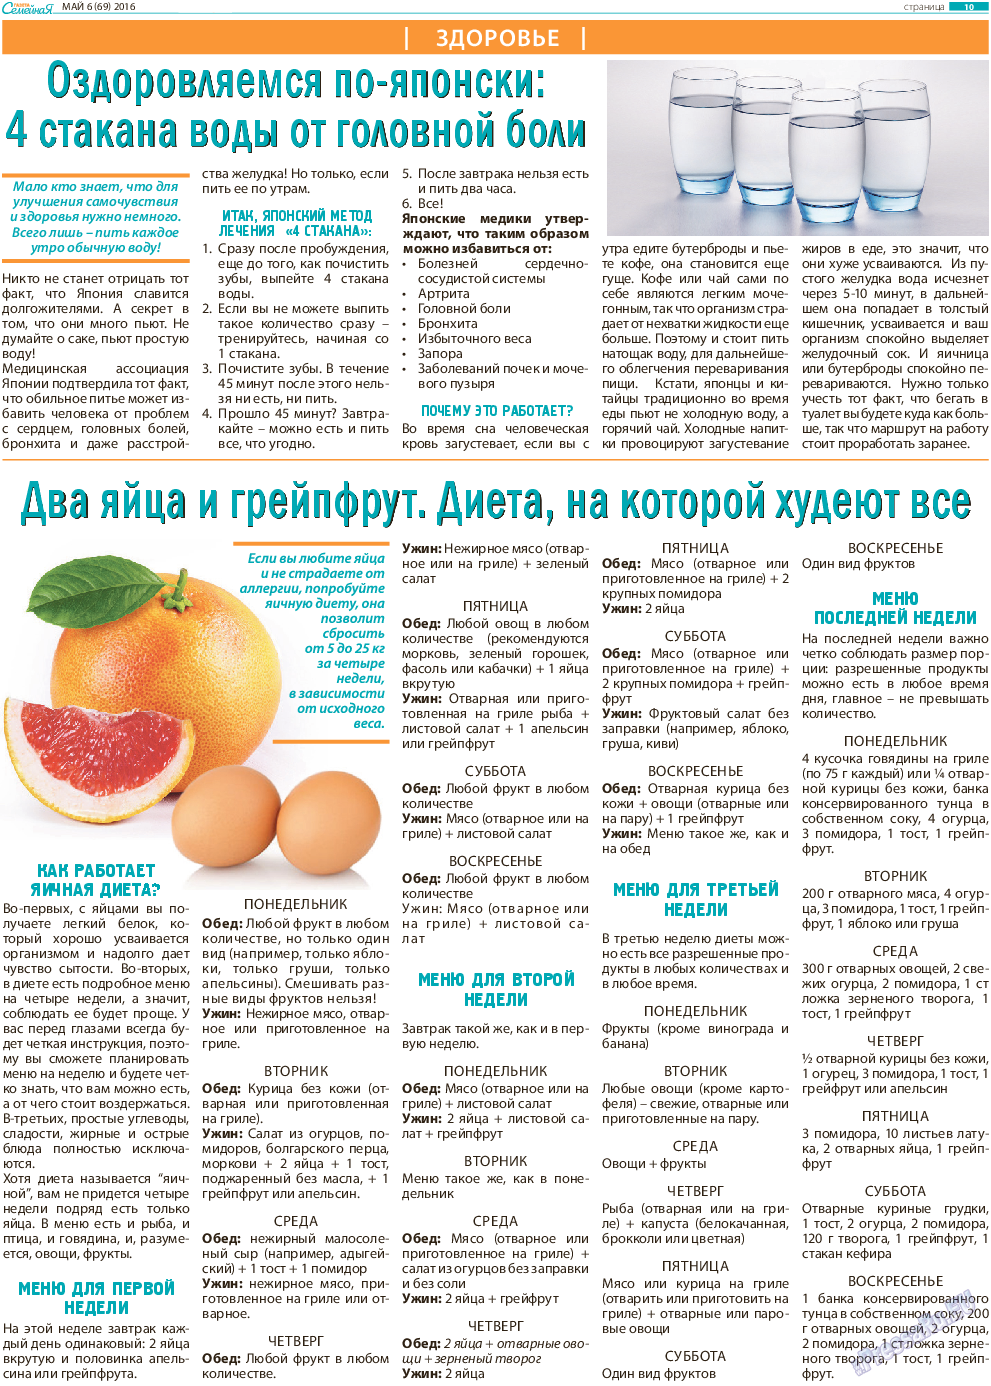 Грейпфрутовая диета для похудения: меню, отзывы и результаты - похудейкина